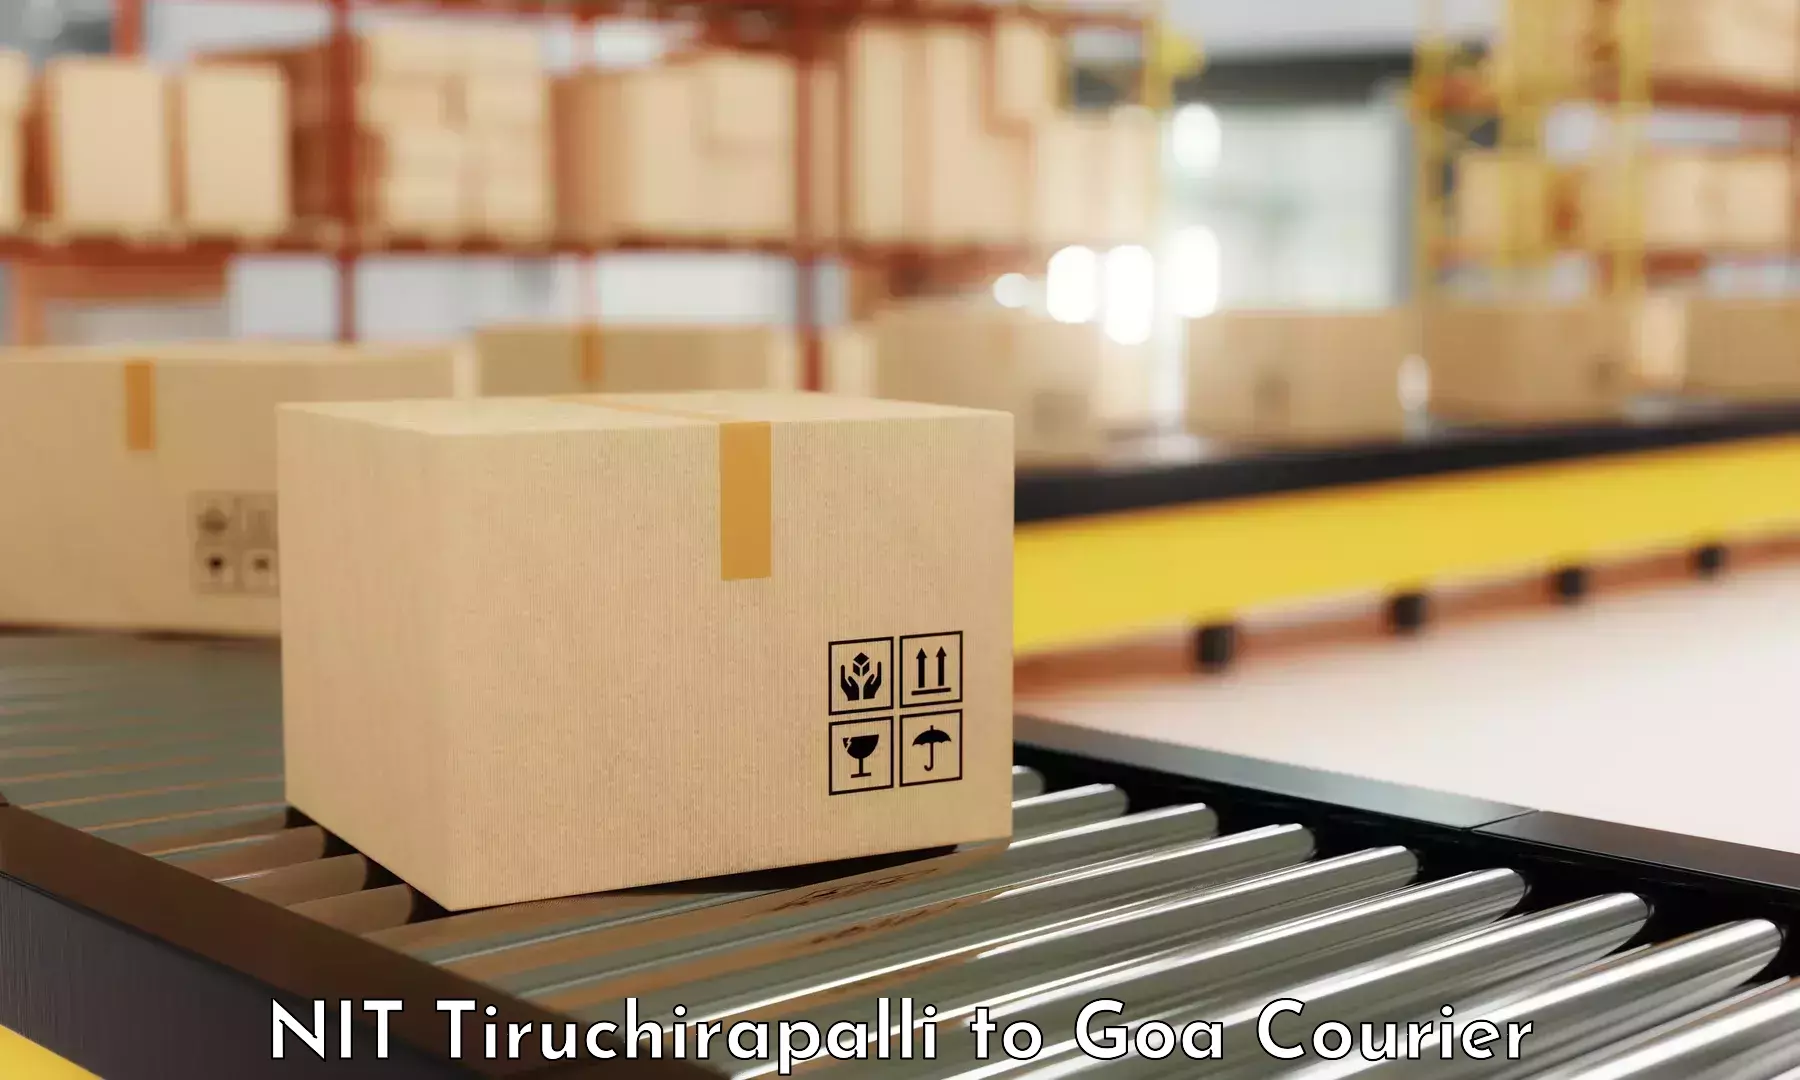 Large package courier NIT Tiruchirapalli to Panjim